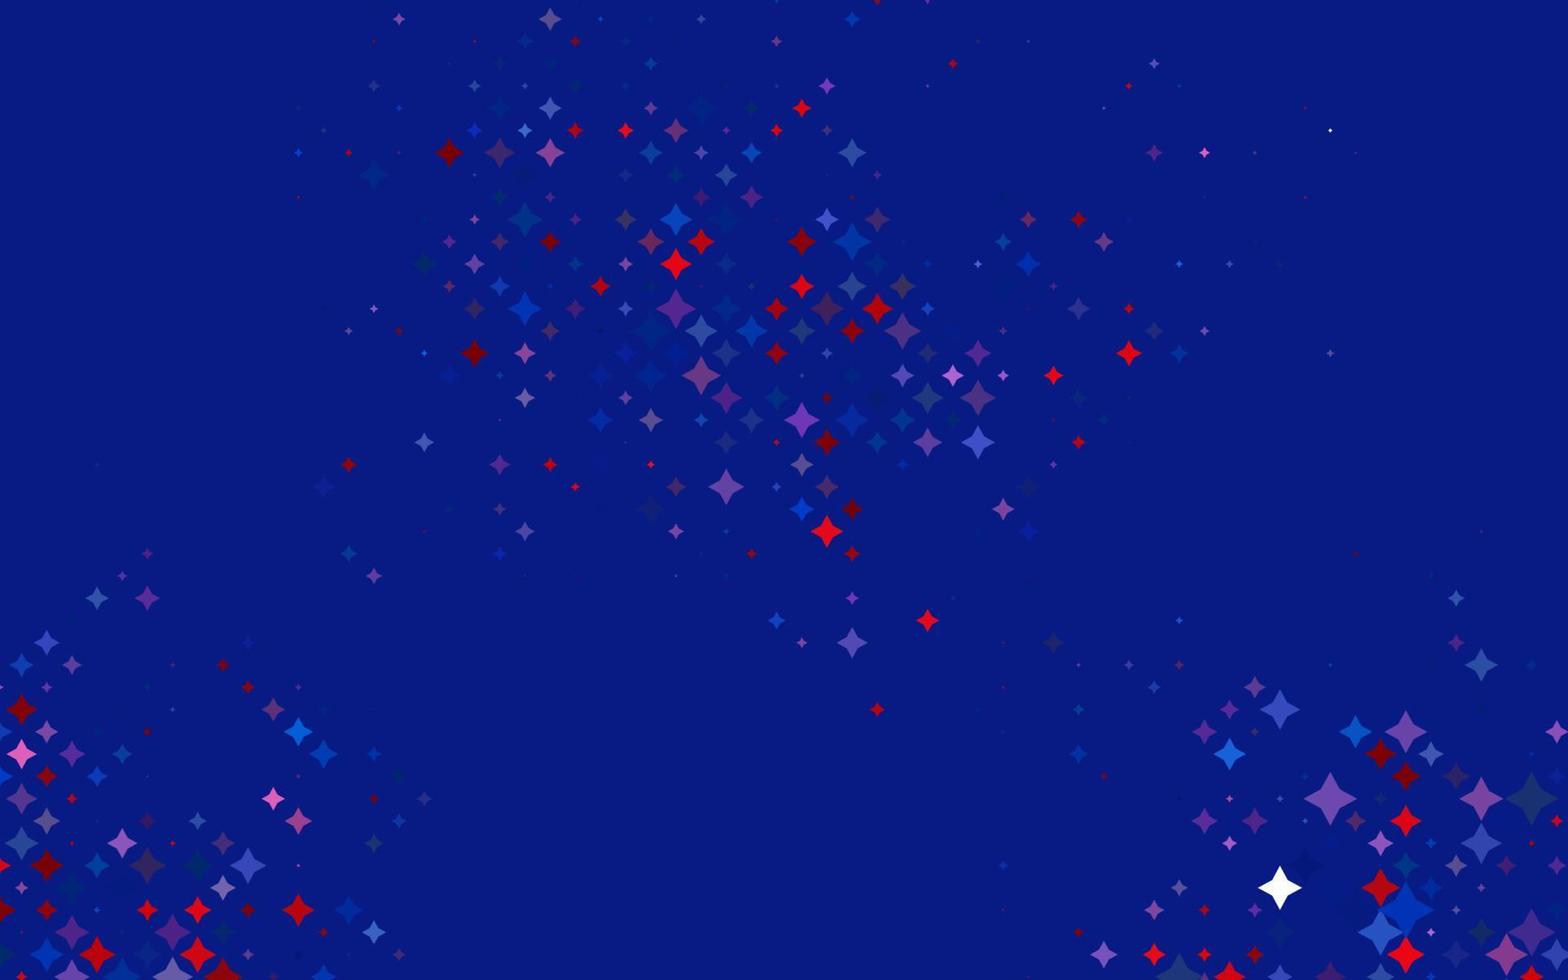 padrão de vetor azul, vermelho claro com estrelas de natal.